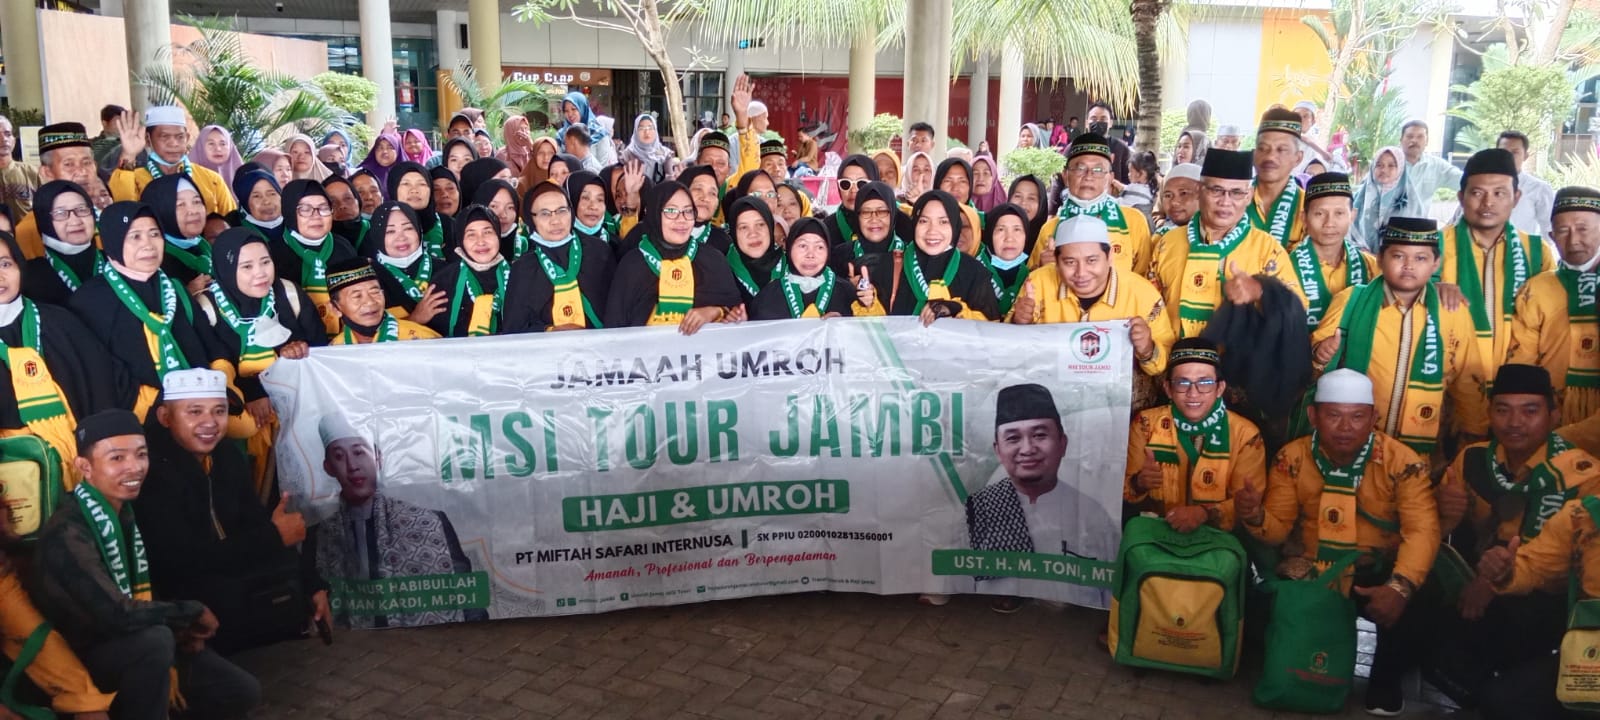 MSI Tour Jambi Berangkatkan 90 Jamaah Umroh